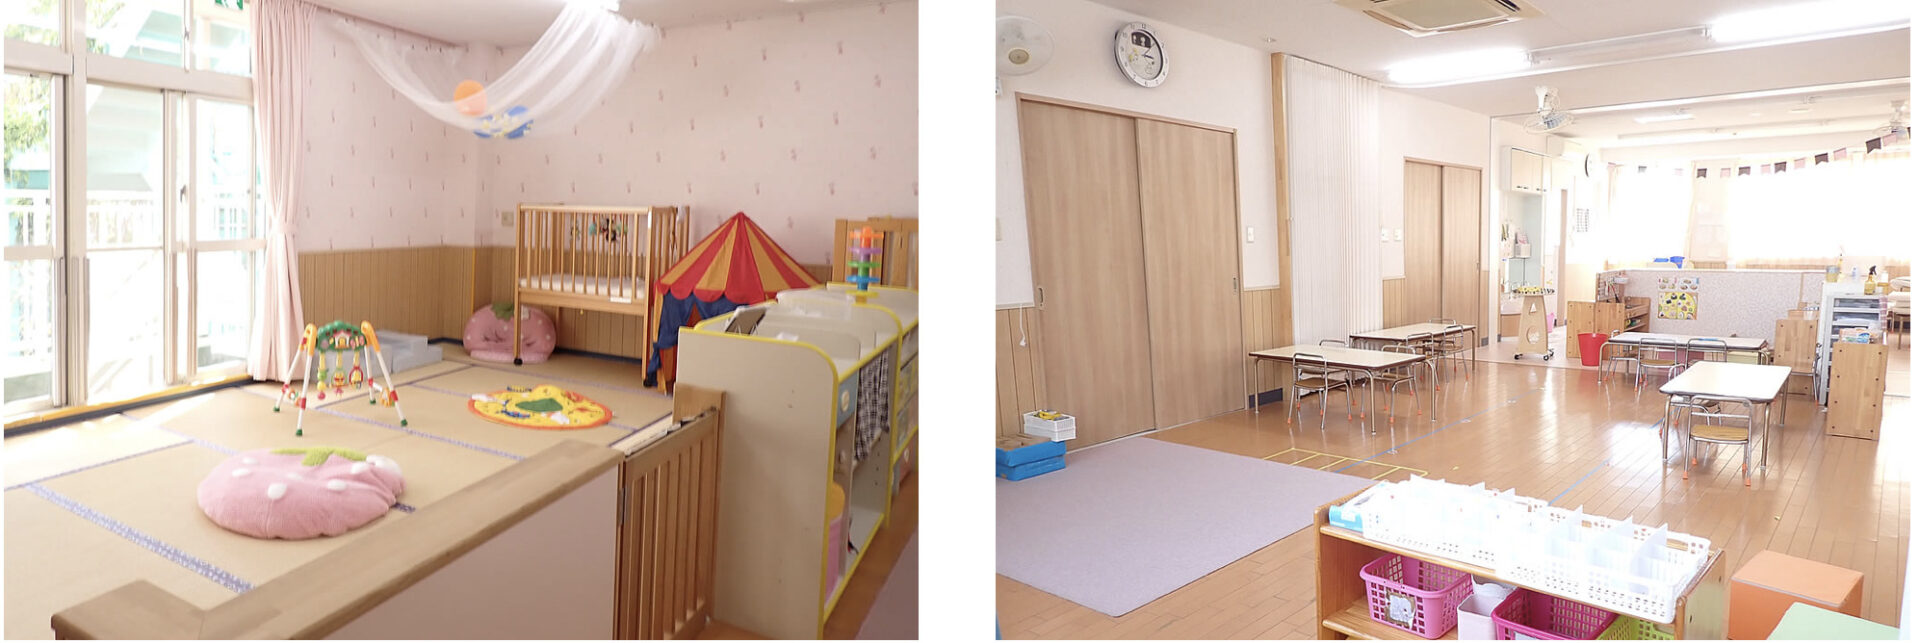 sakai-victory-kindergarten